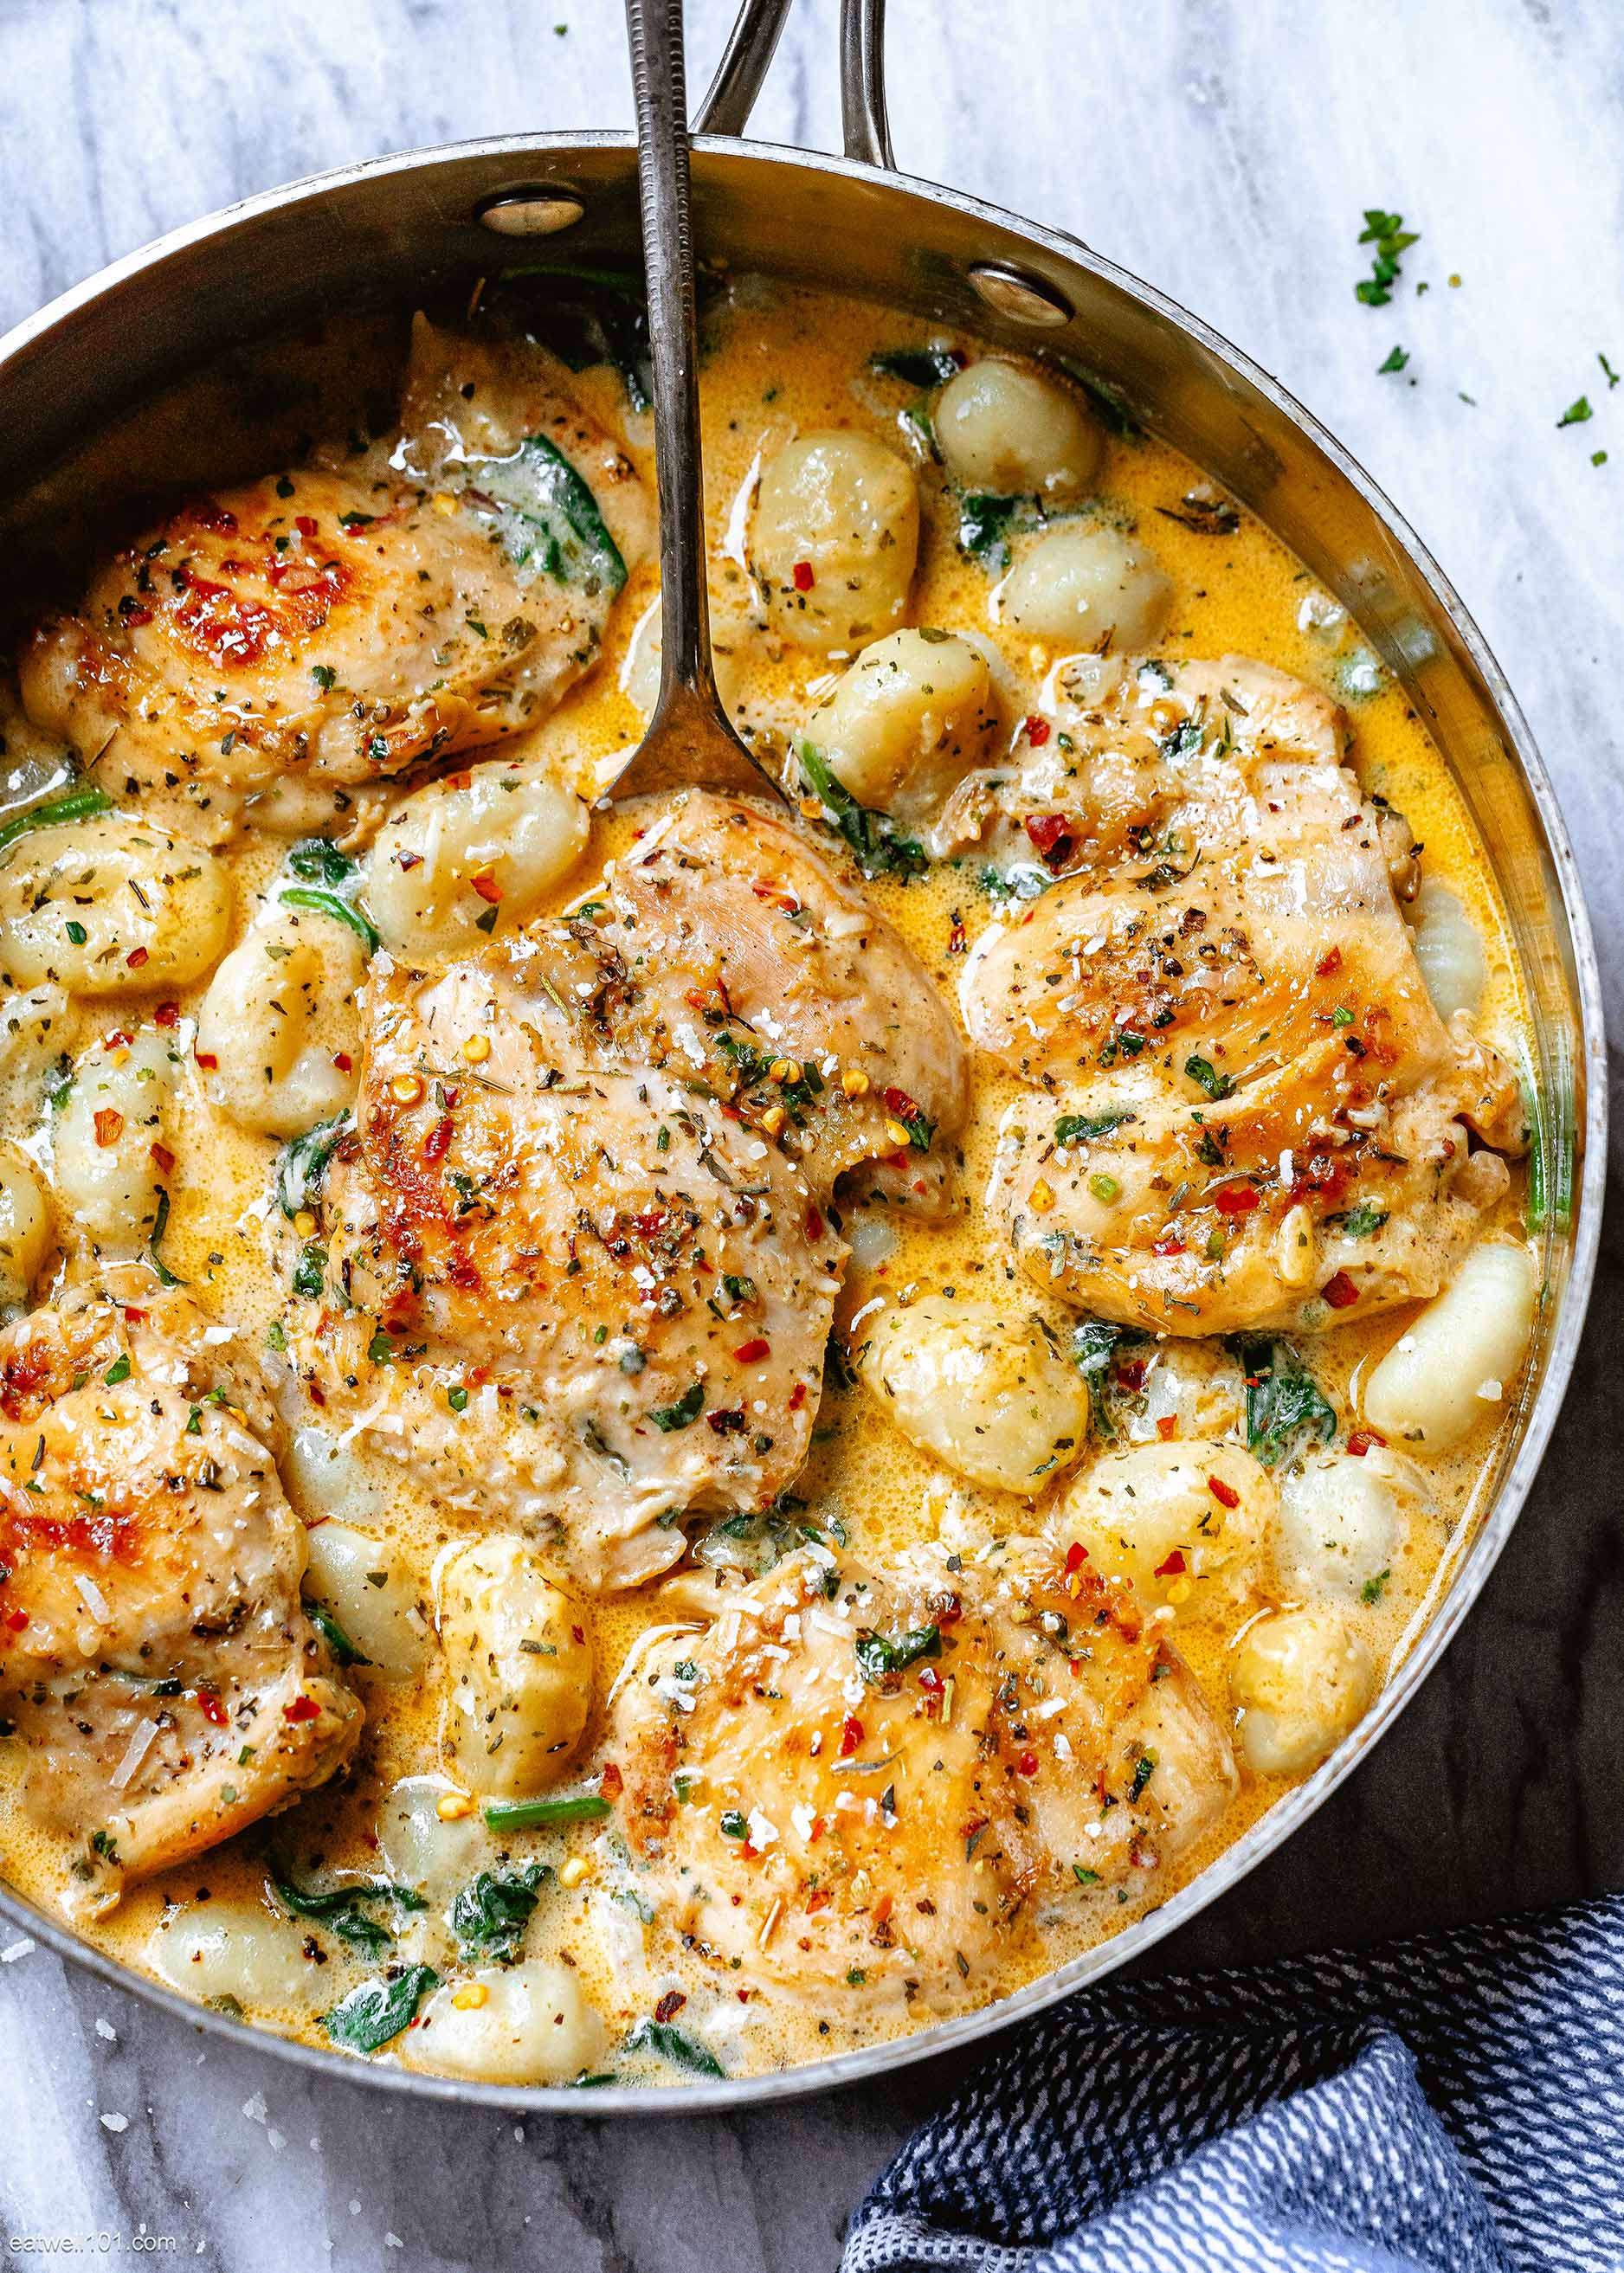 Creamy Garlic Spinach Chicken Thighs Recipe with Gnocchi – Chicken and